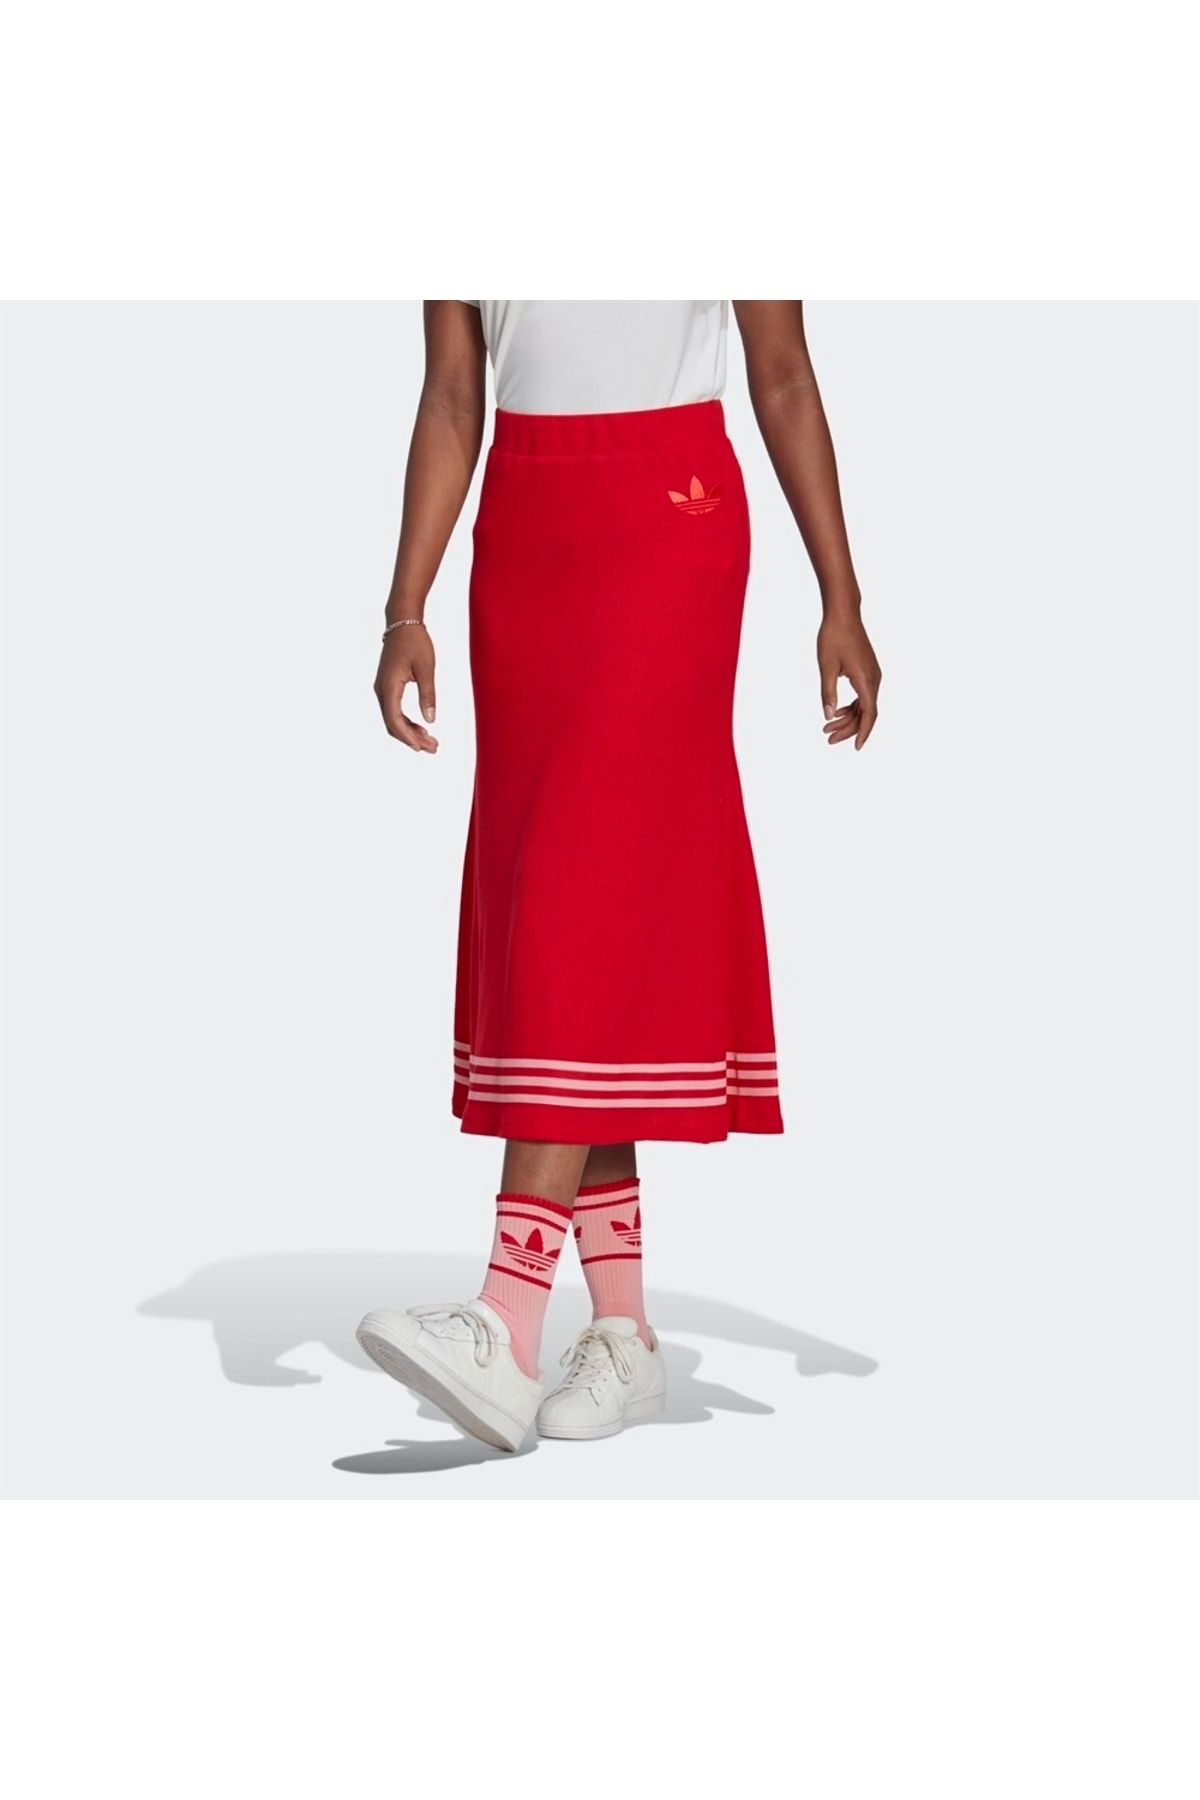 adidas Knit Skirt Kadın Etek Fiyatı, Yorumları - Trendyol